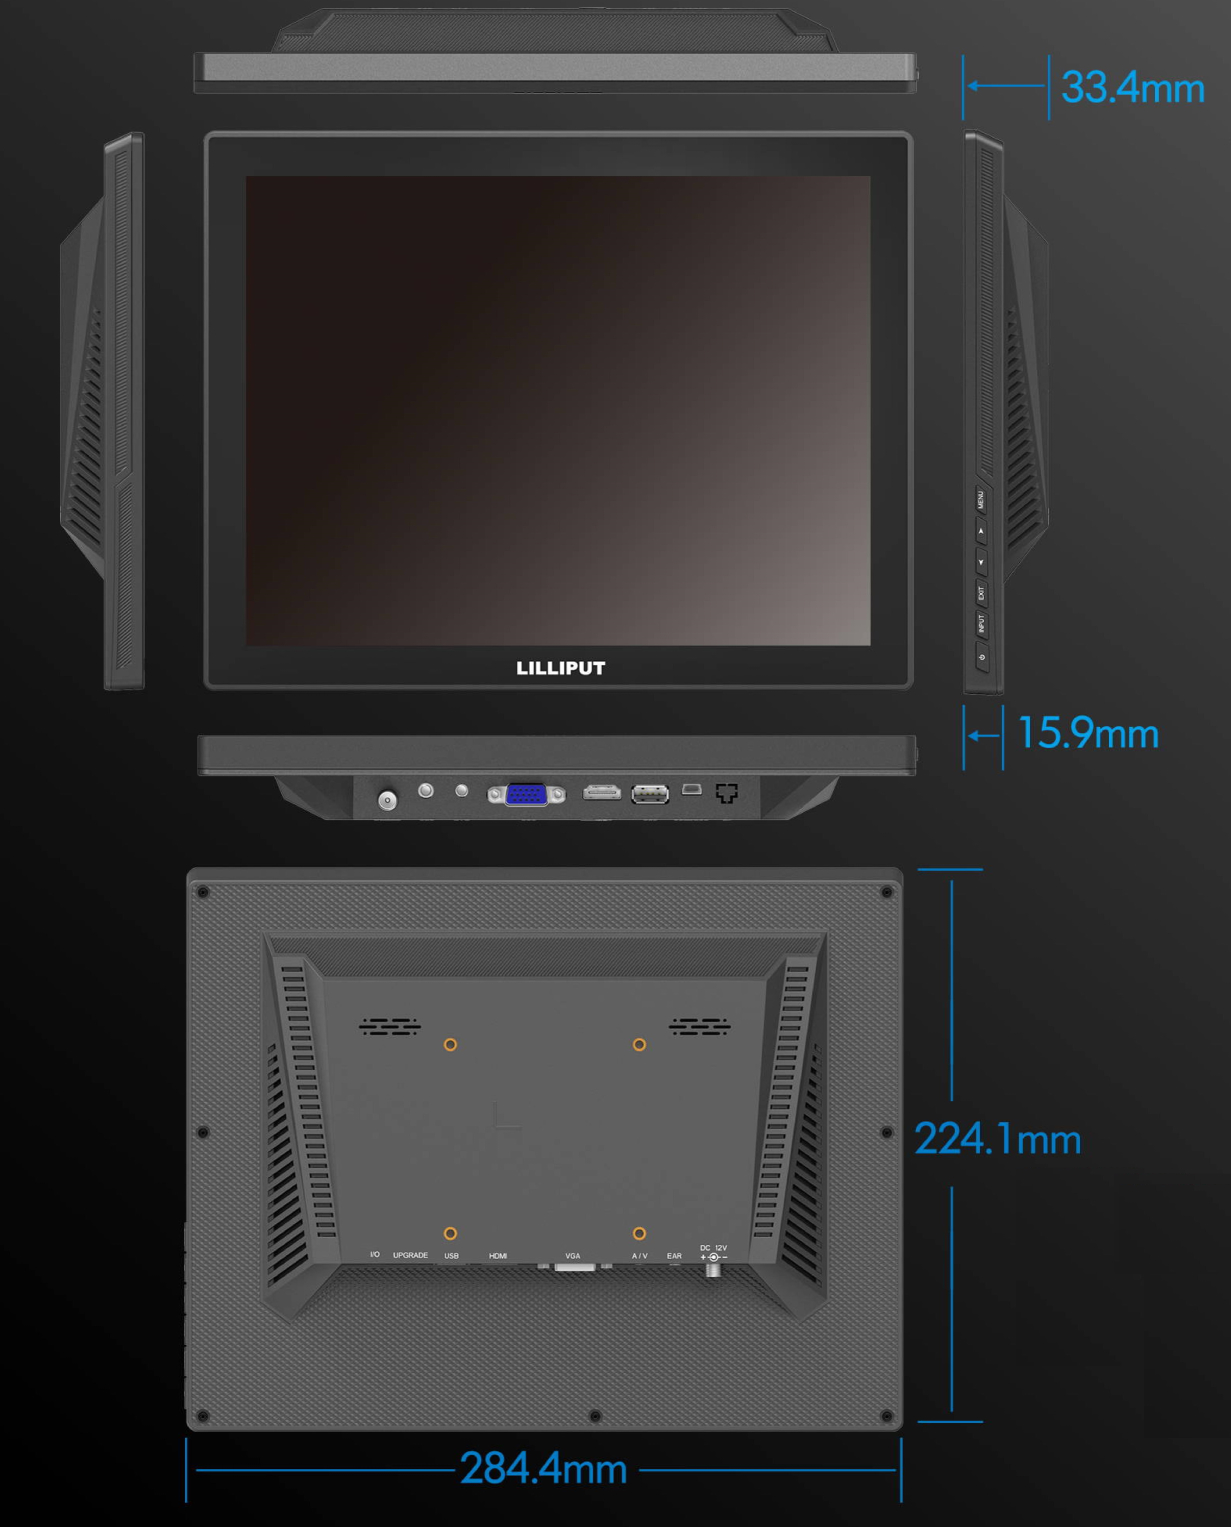 39230円 クラシック Lilliput Fa1045-np c t DVI Hdmi VGA Touchscreen Monitor With 75mm Vesa Hole By Viviteq by